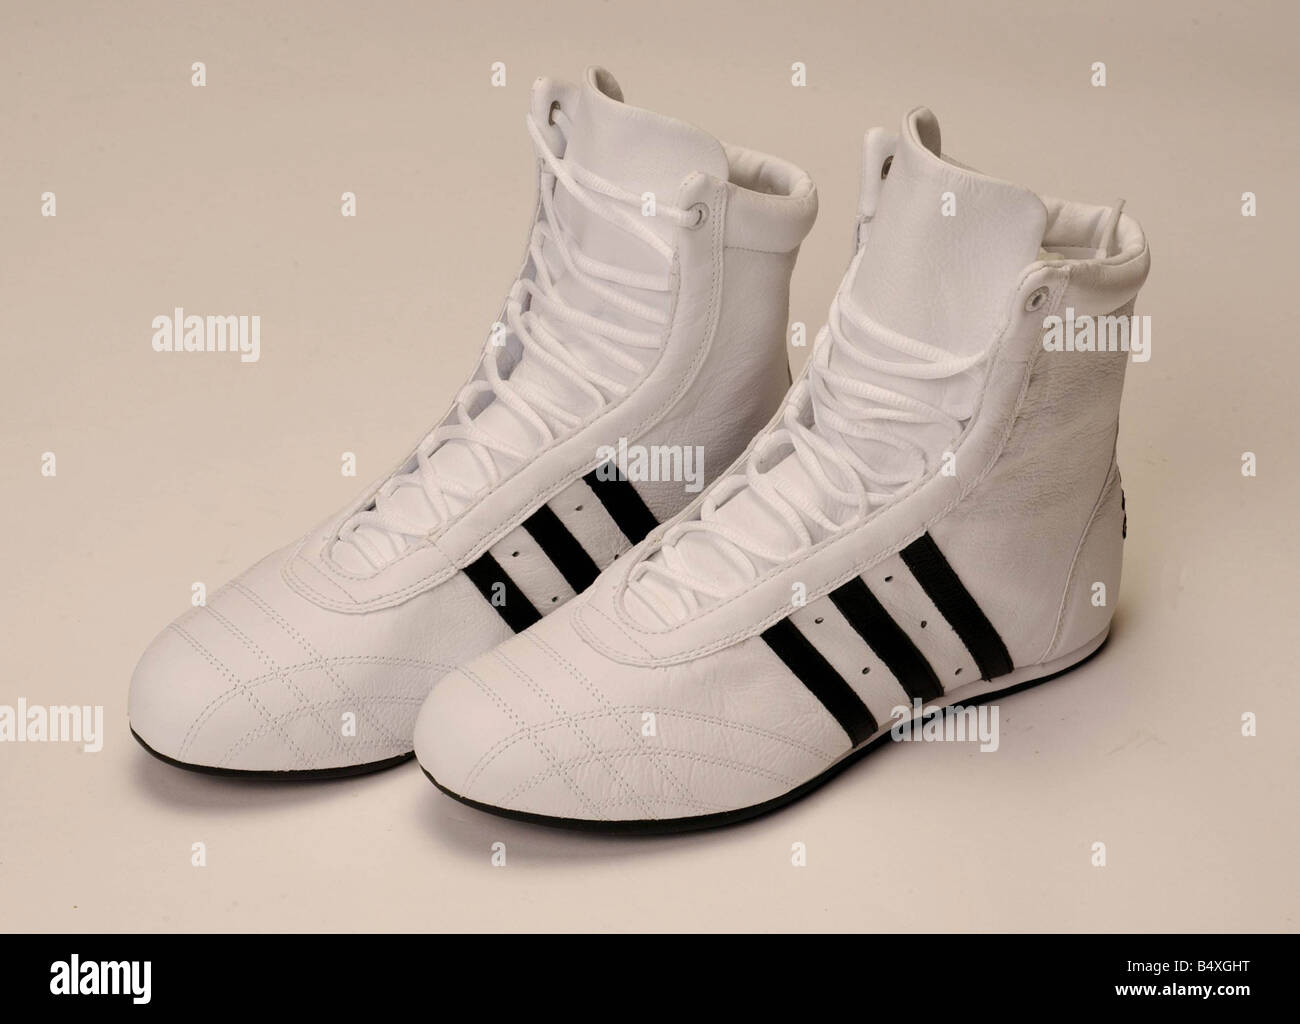 adidas boxe shoes